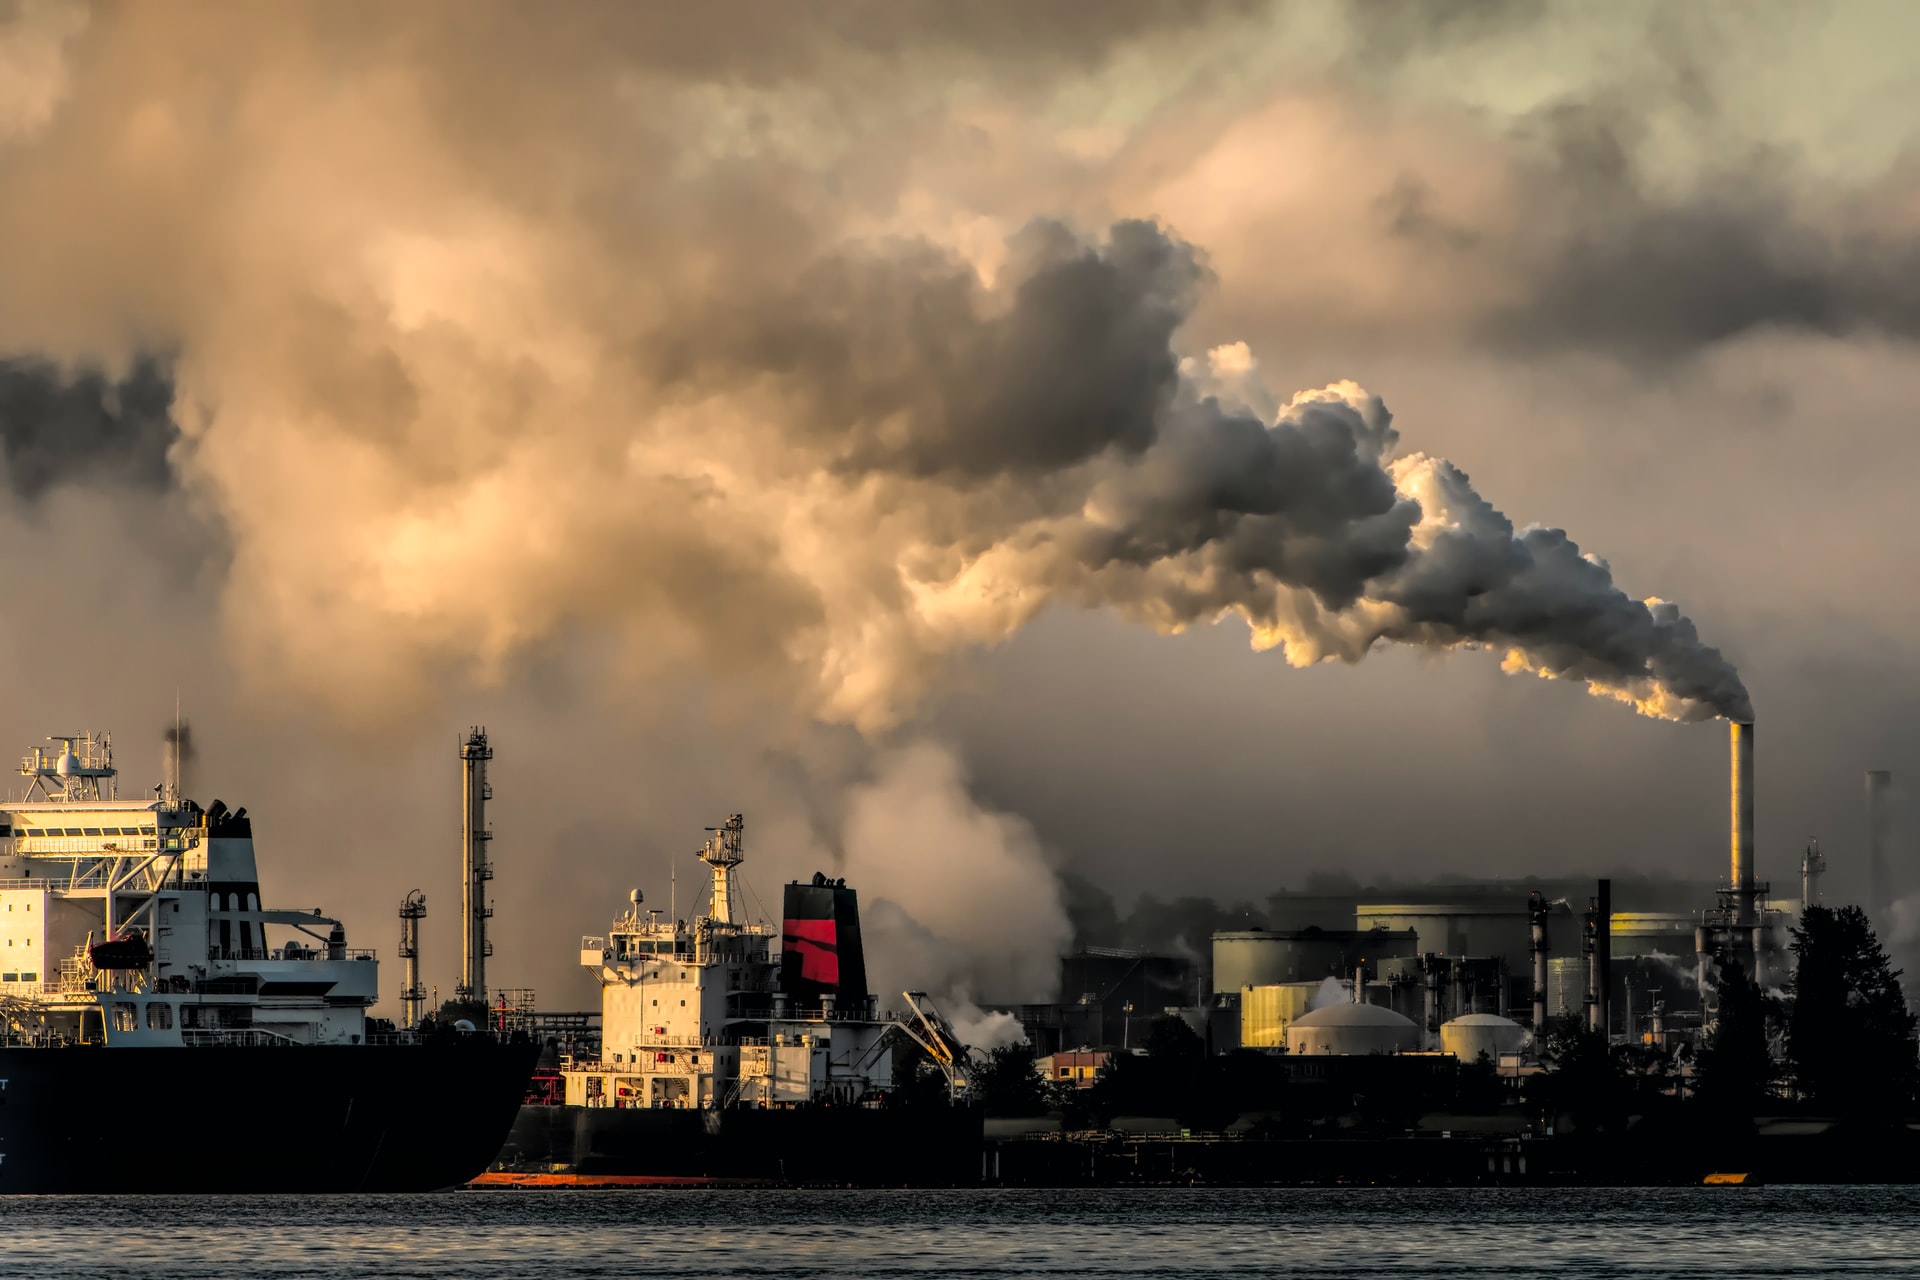 工場の煙突から大量の汚染物質が垂れ流されている